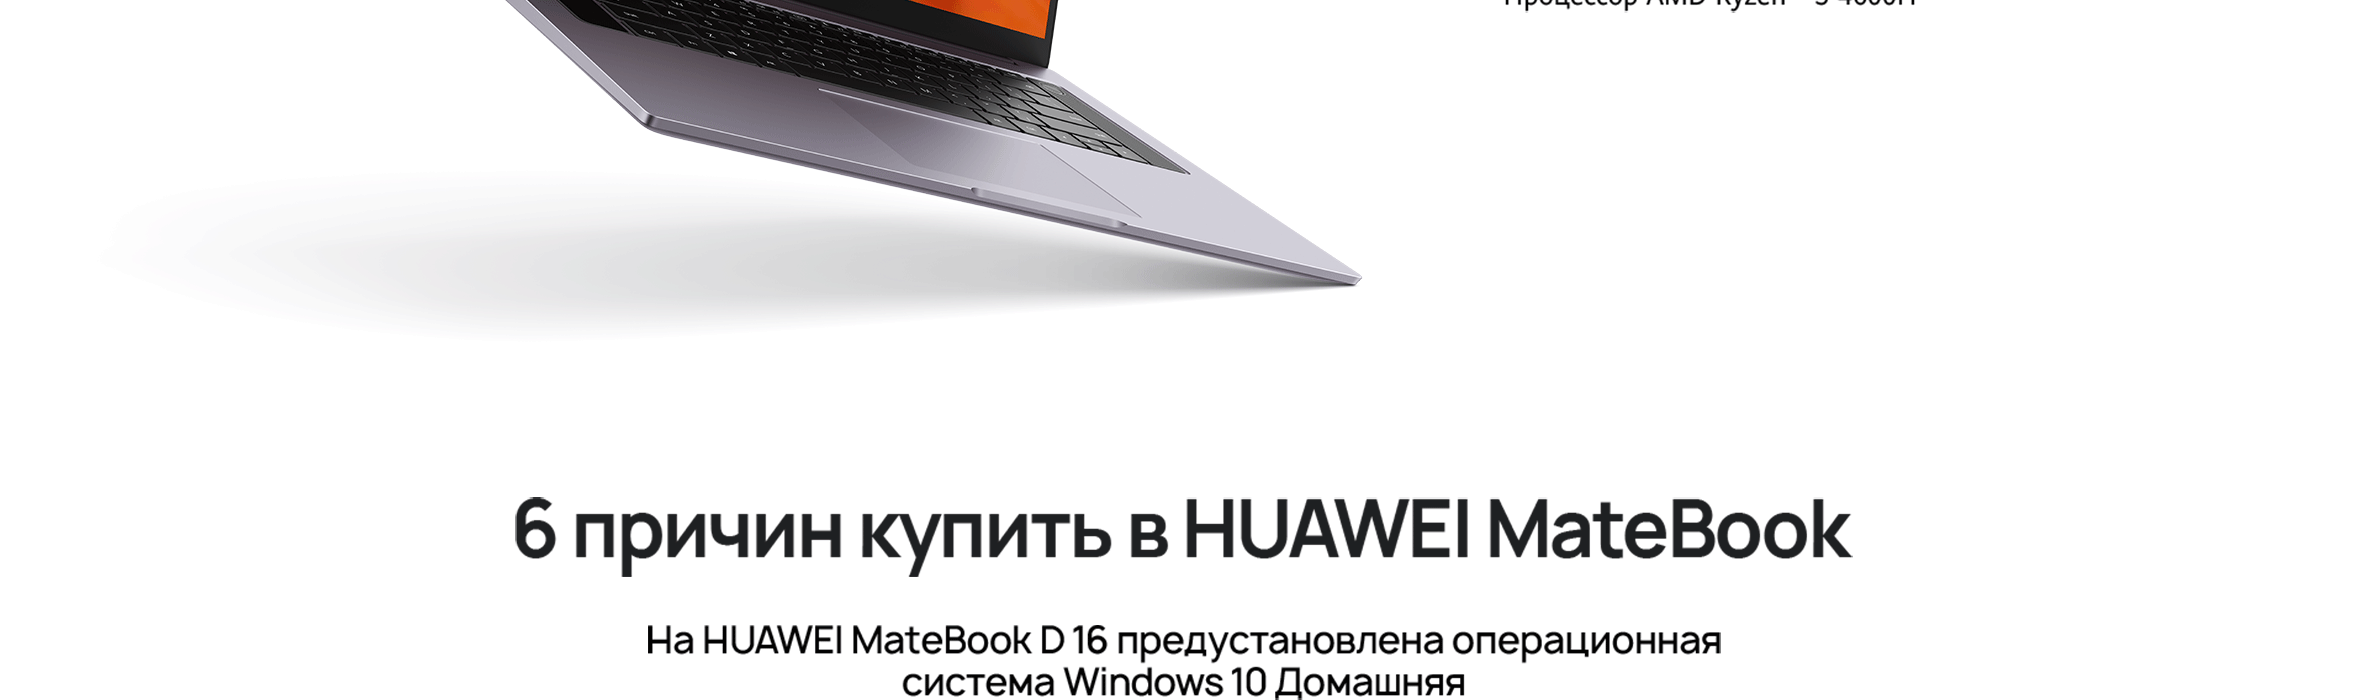 Ноутбук Huawei Matebook D 16 Купить